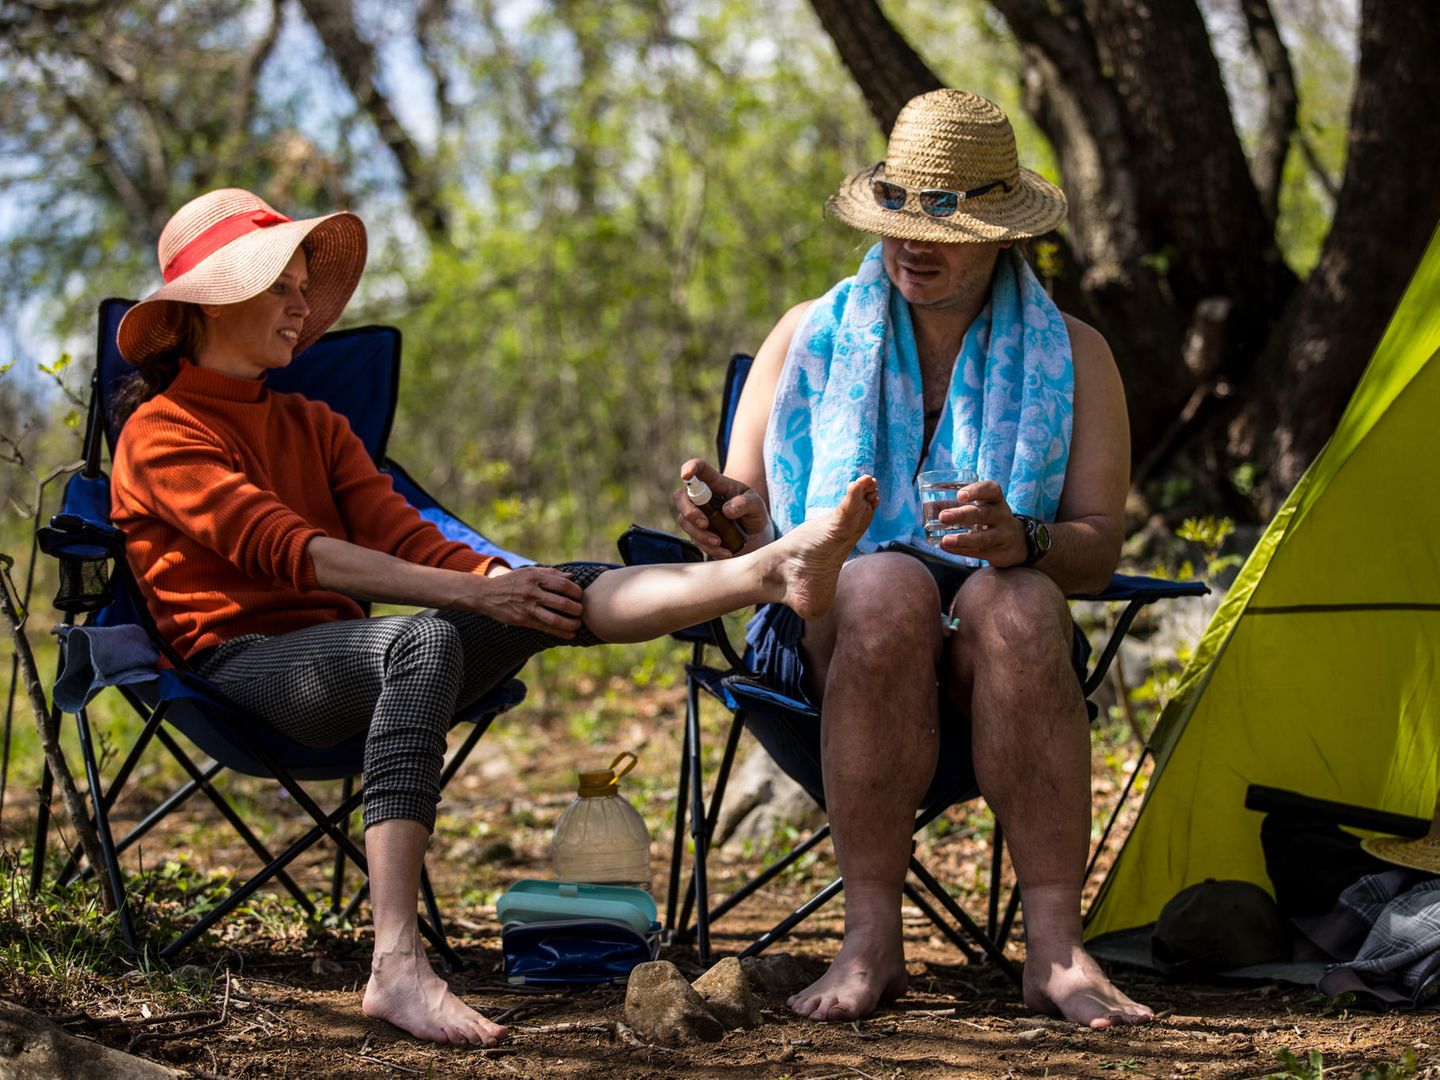 Langeweile, Mückenstiche, Rückenschmerzen: Camping wird überbewertet